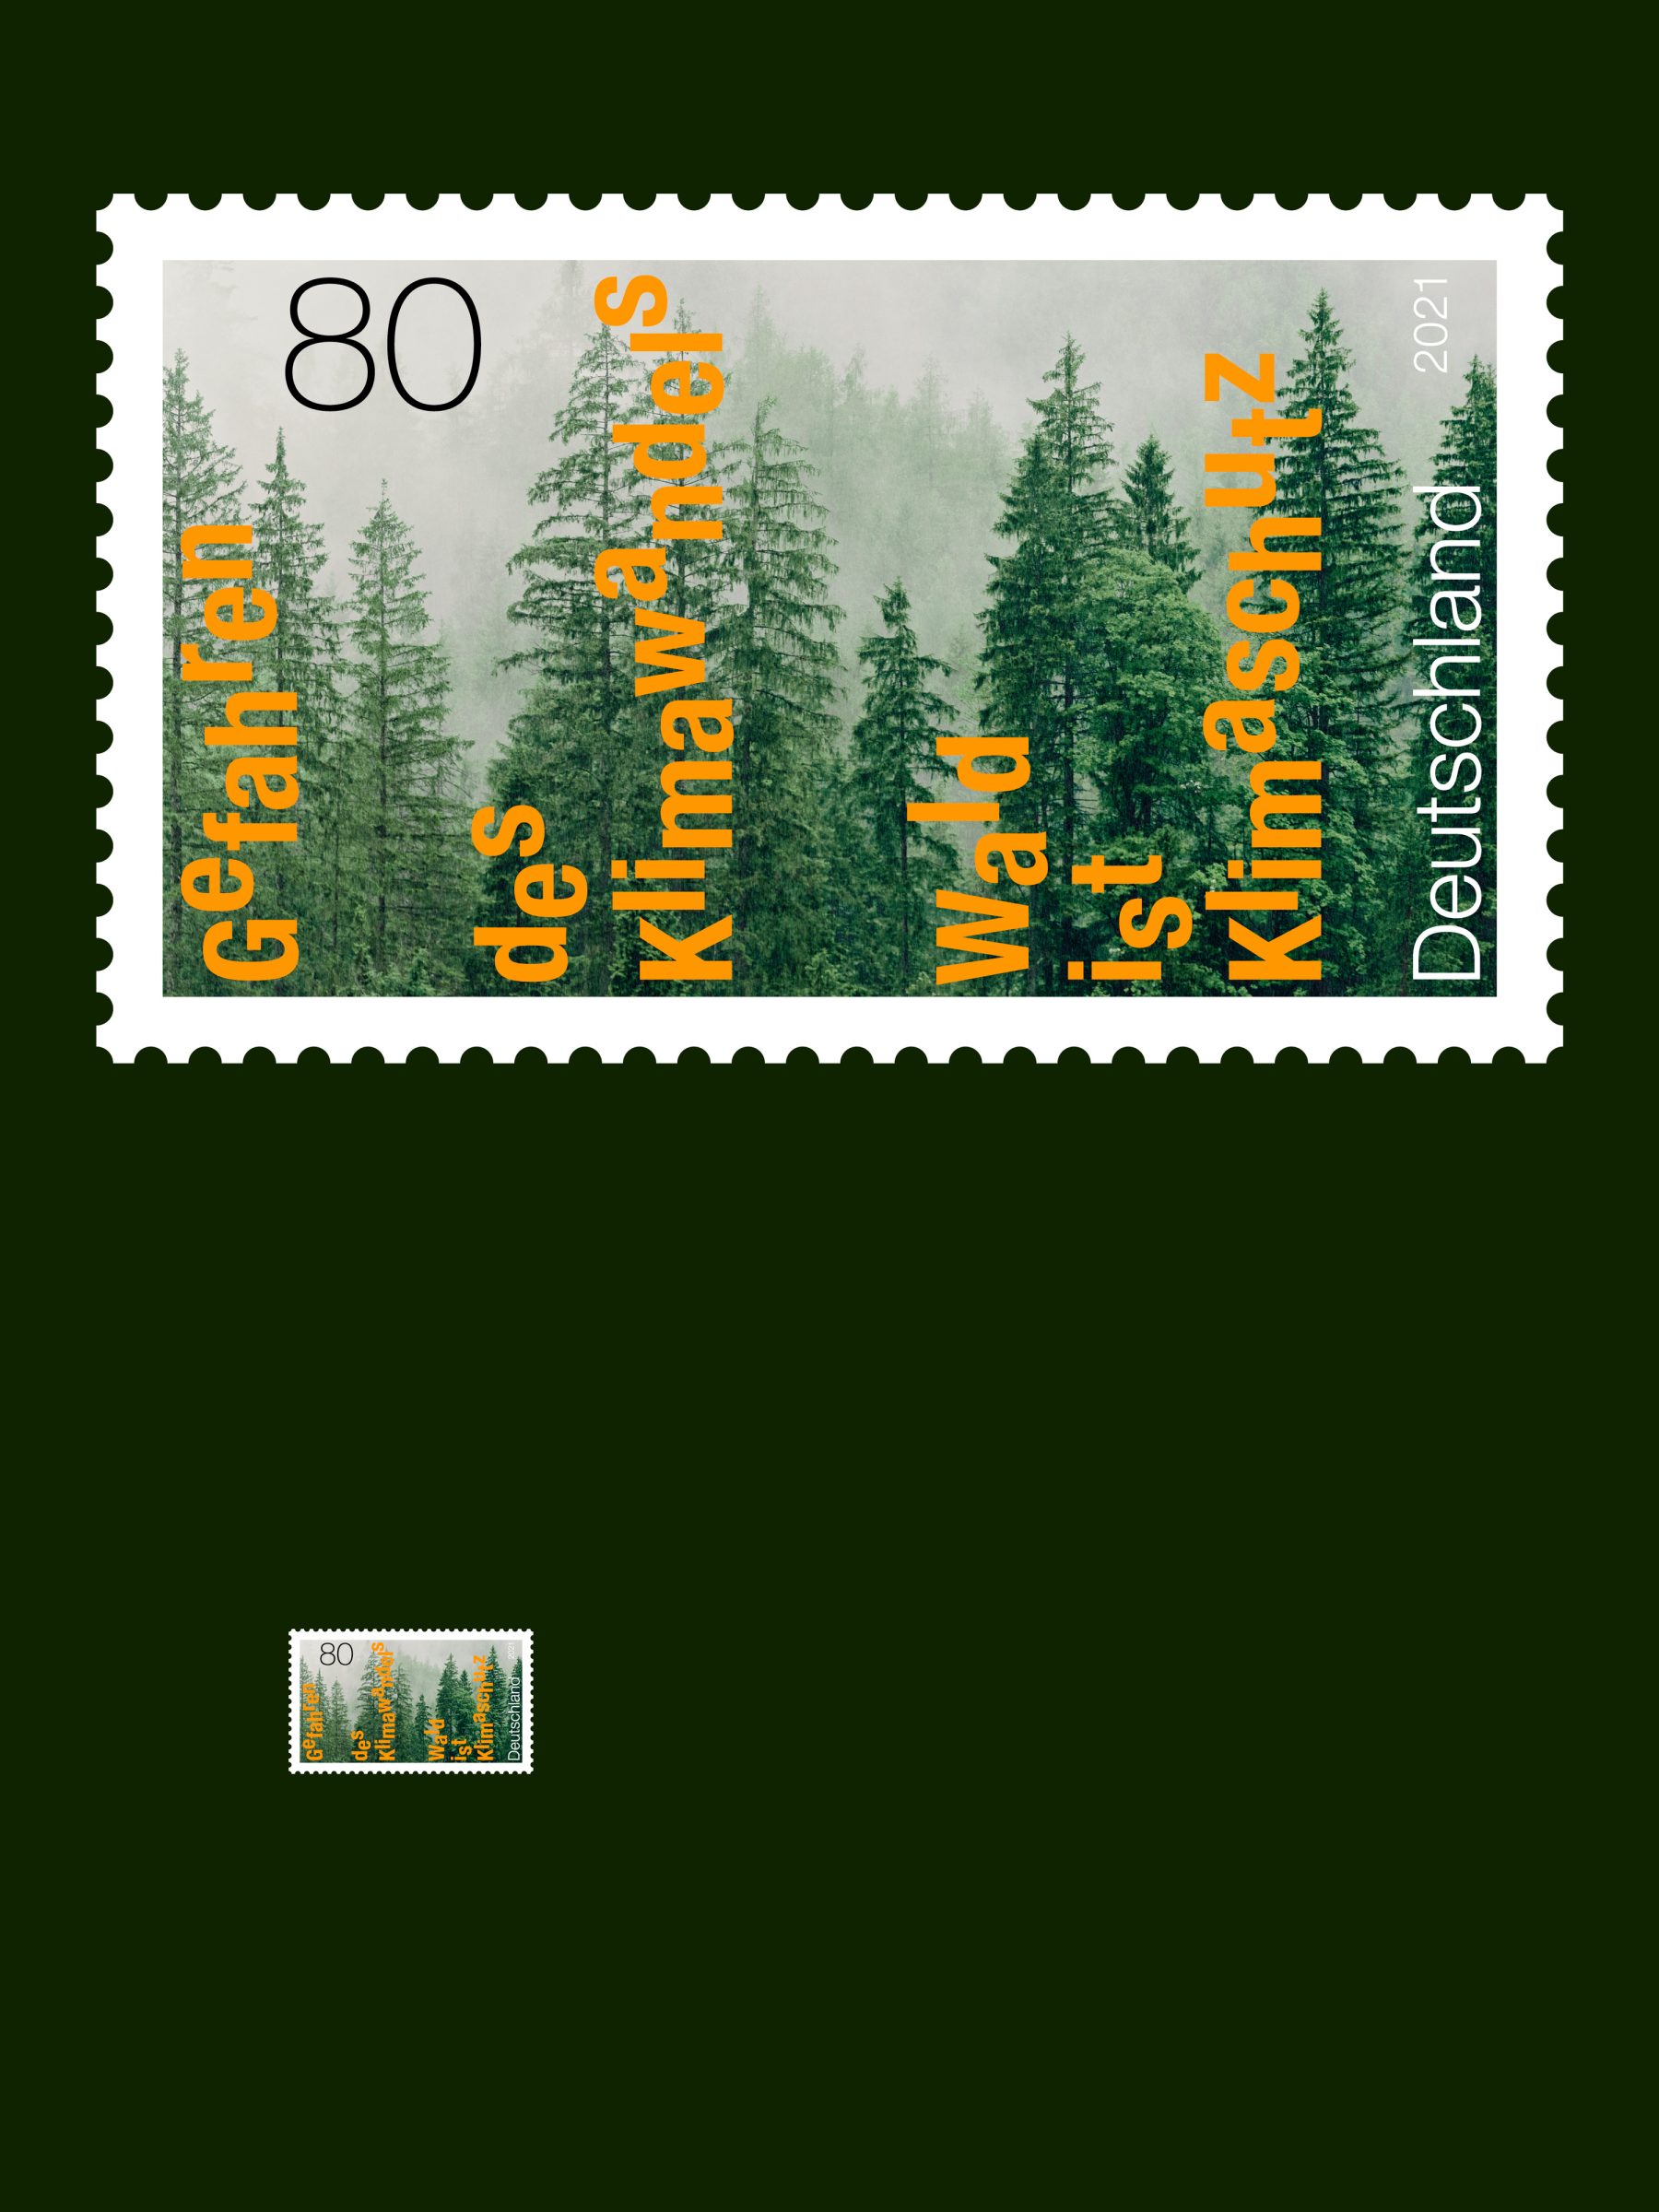 Special postage stamps, Gefahren des Klimawandels – Wald ist Klimaschutz, 2021, Federal Ministry of Finance, David Fischbach